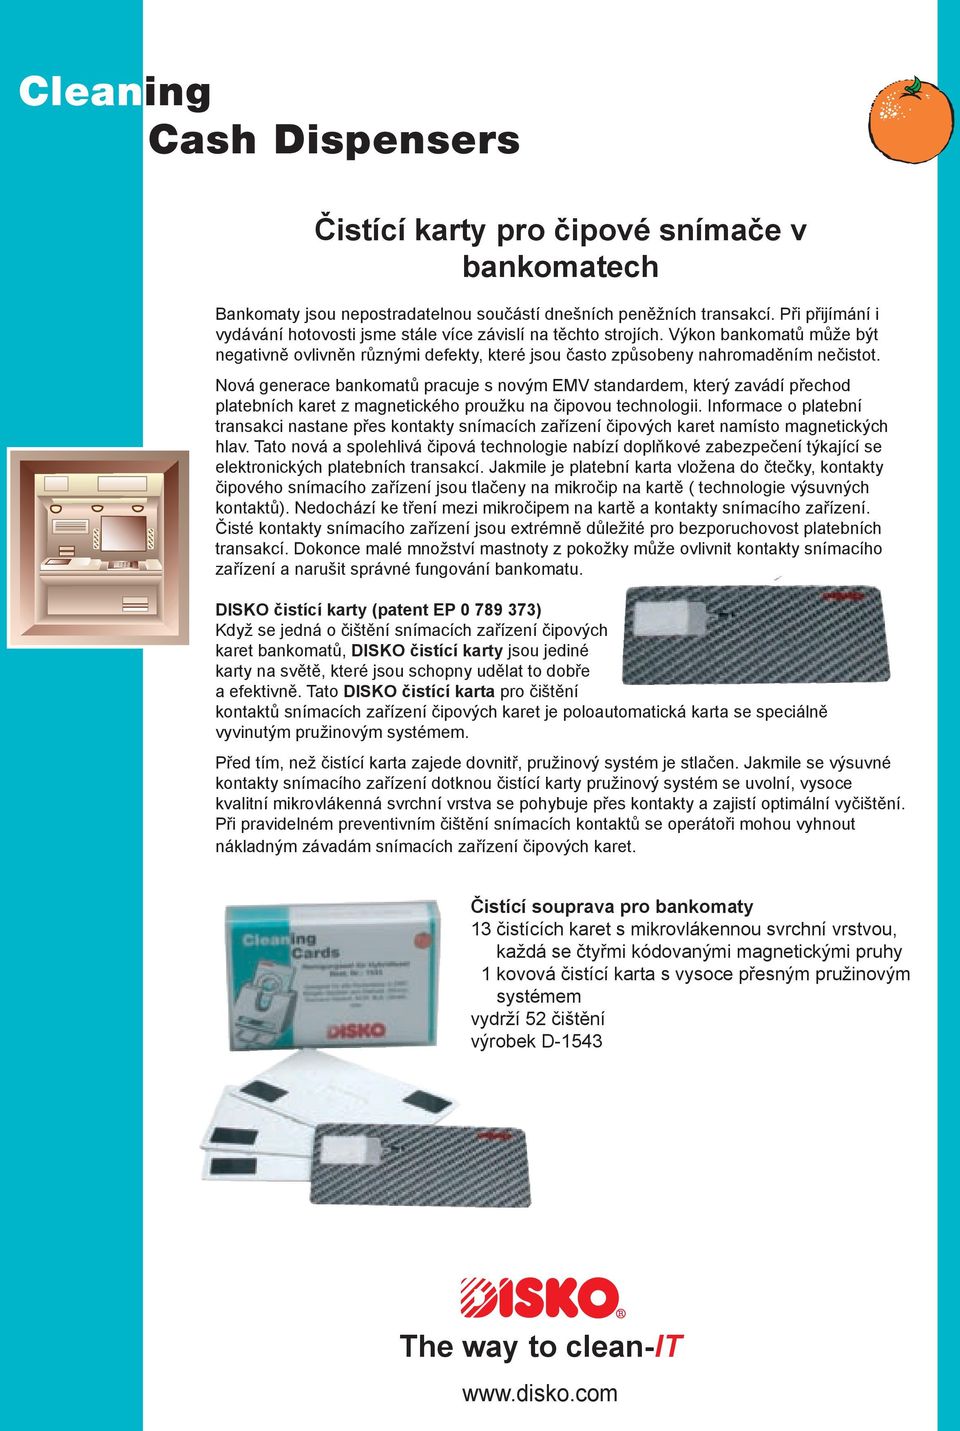 Nová generace bankomatů pracuje s novým EMV standardem, který zavádí přechod platebních karet z magnetického proužku na čipovou technologii.